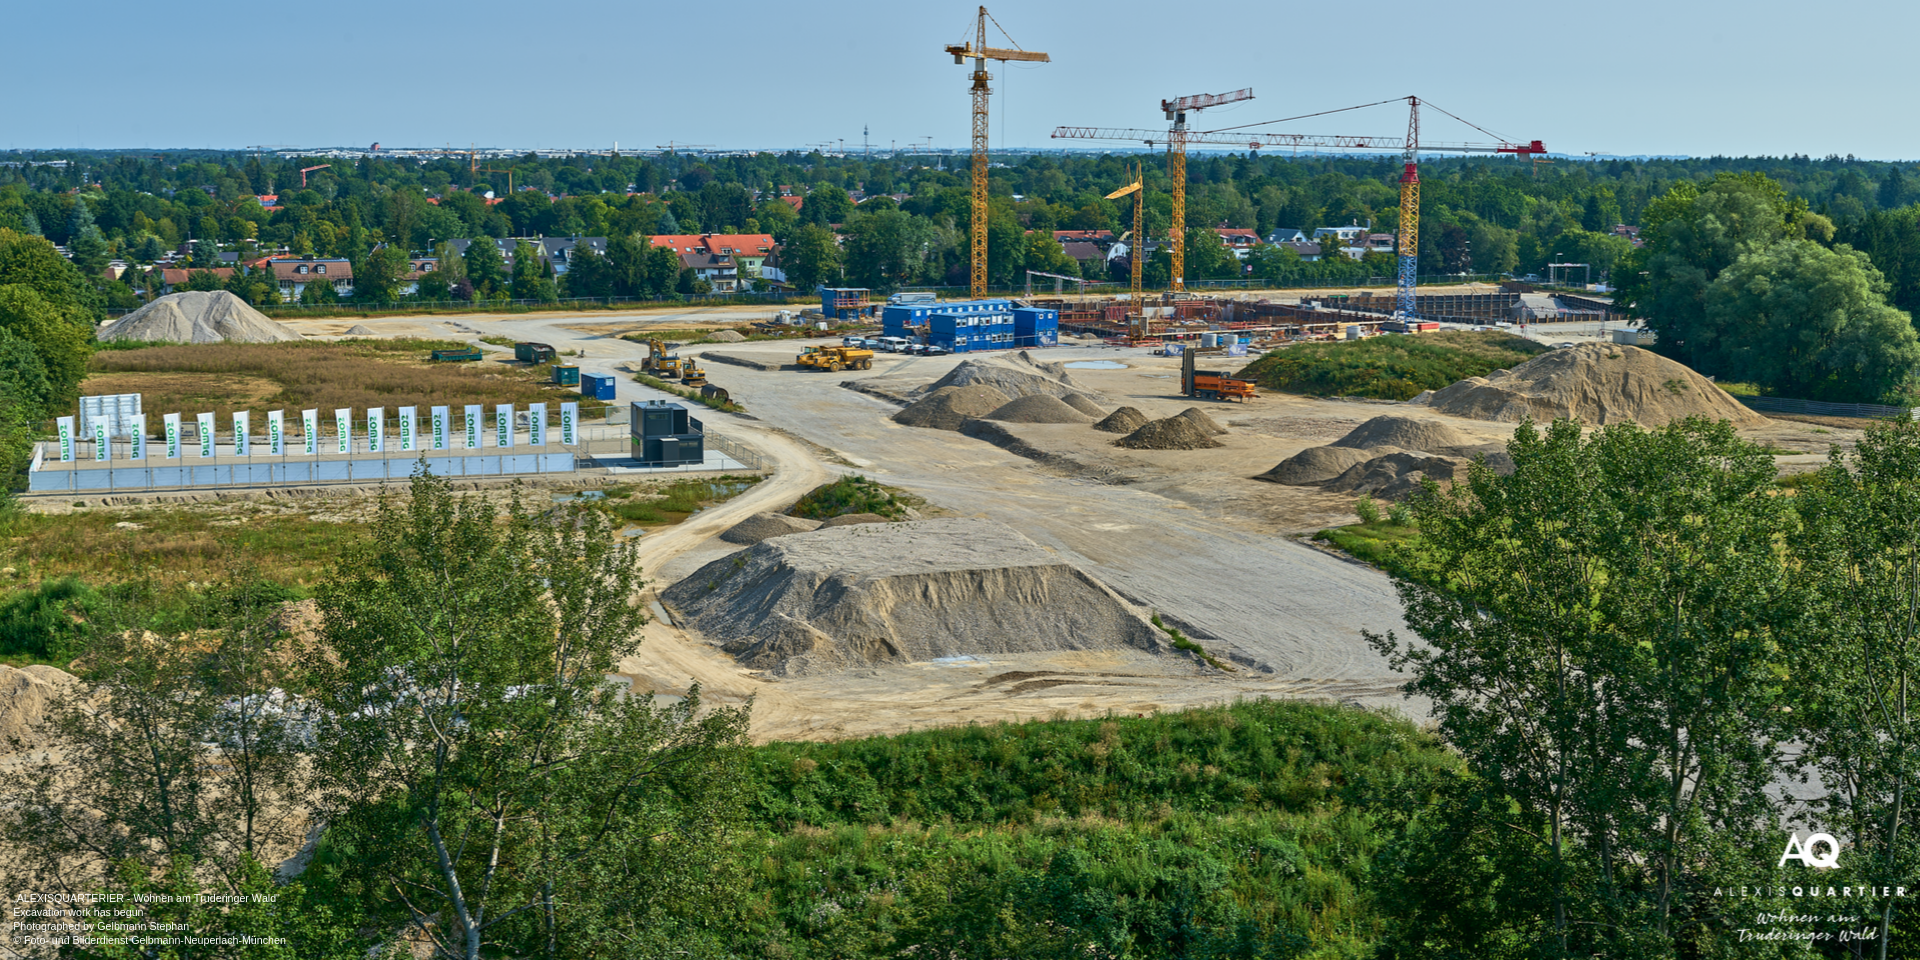 'ALEXISQUARTIER – Wohnen am Truderinger Wald' in Munich-Perlach: Excavation work has begun